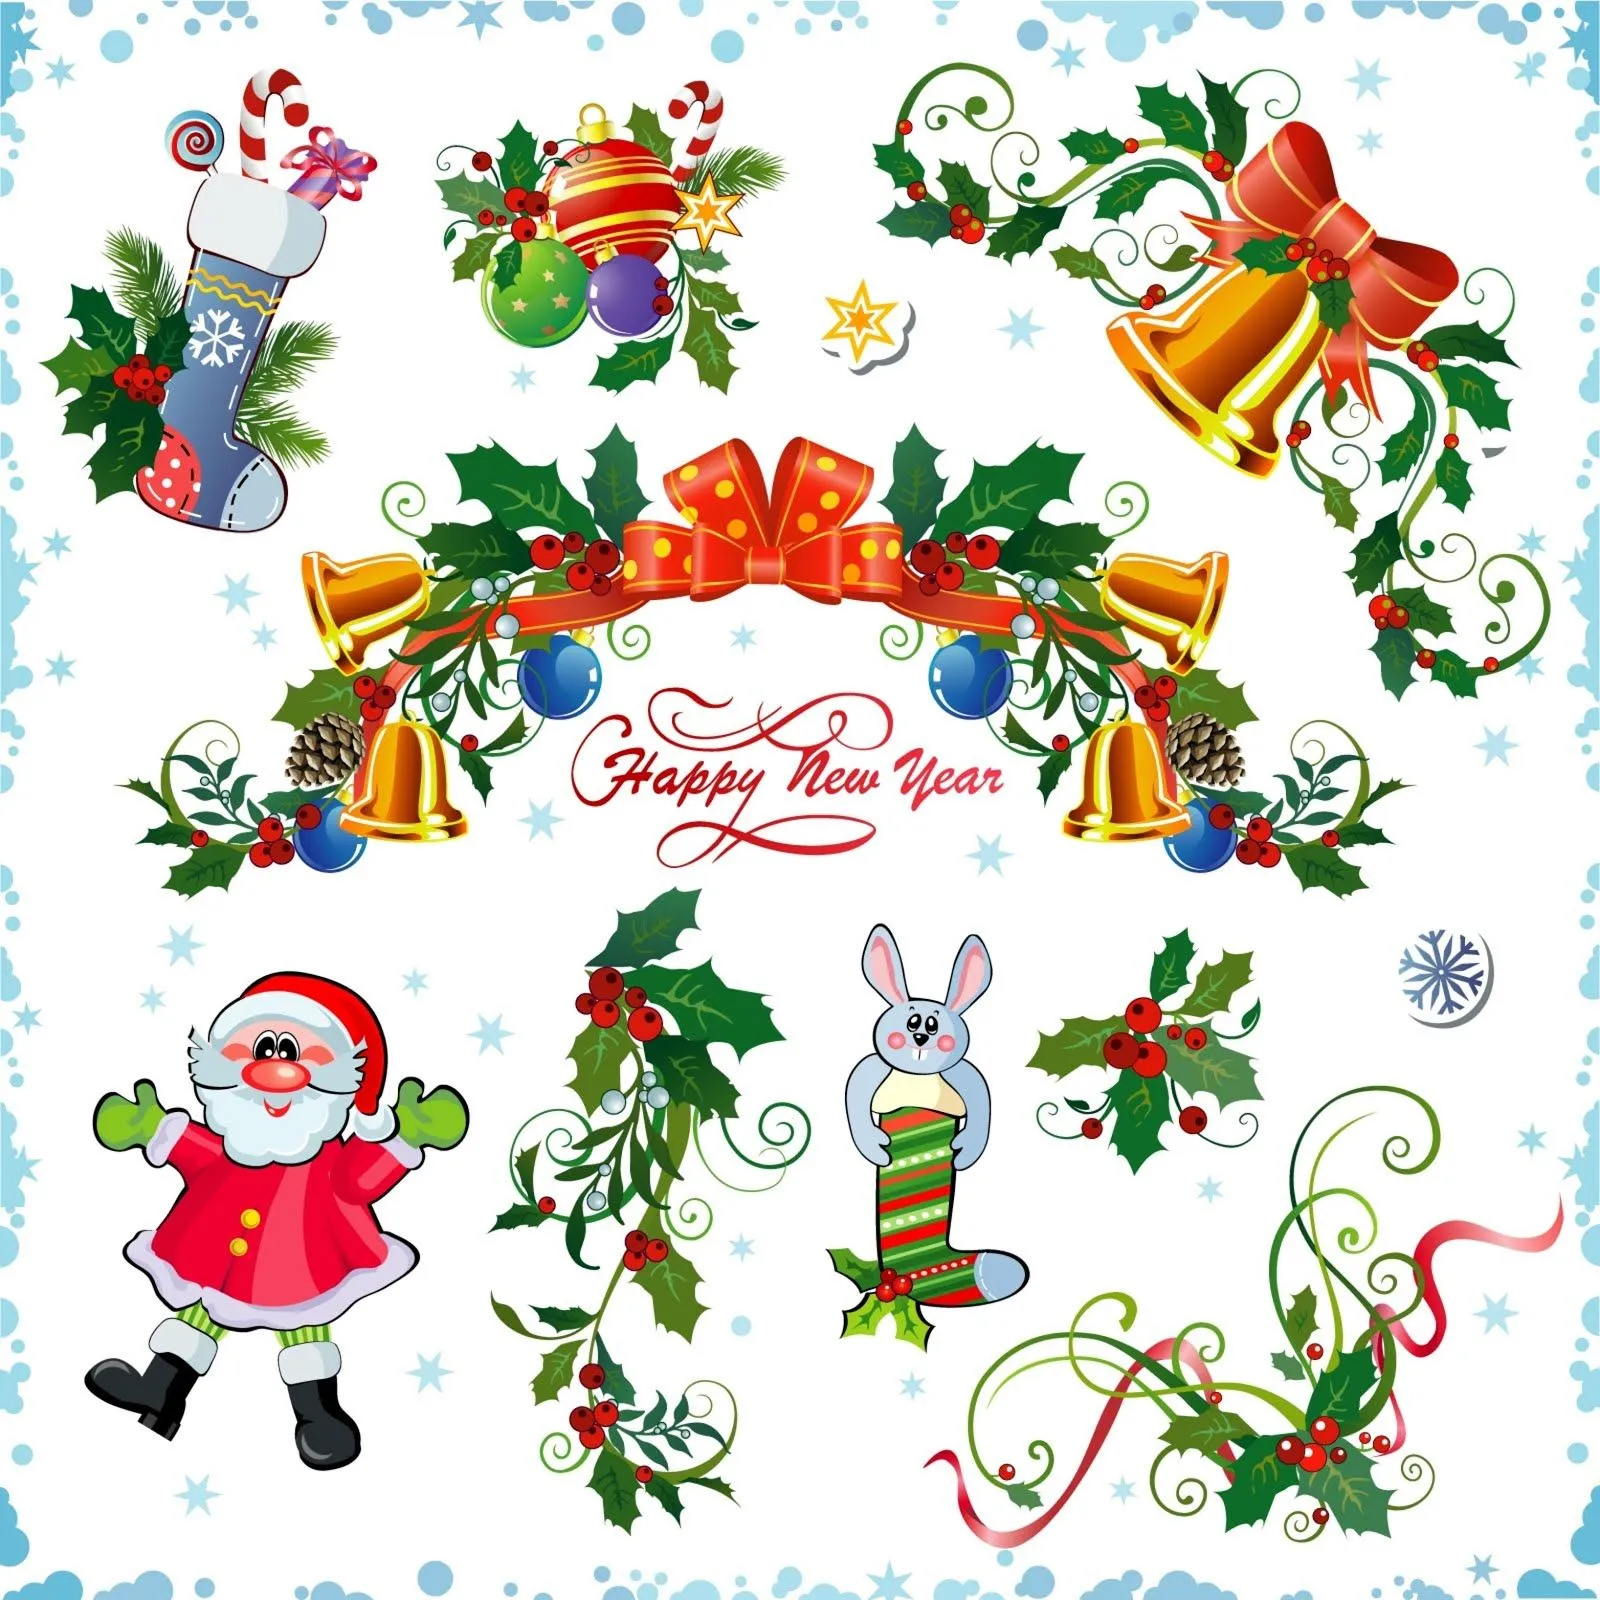 Adornos navideños para decorar su blog o página web | Banco de ...